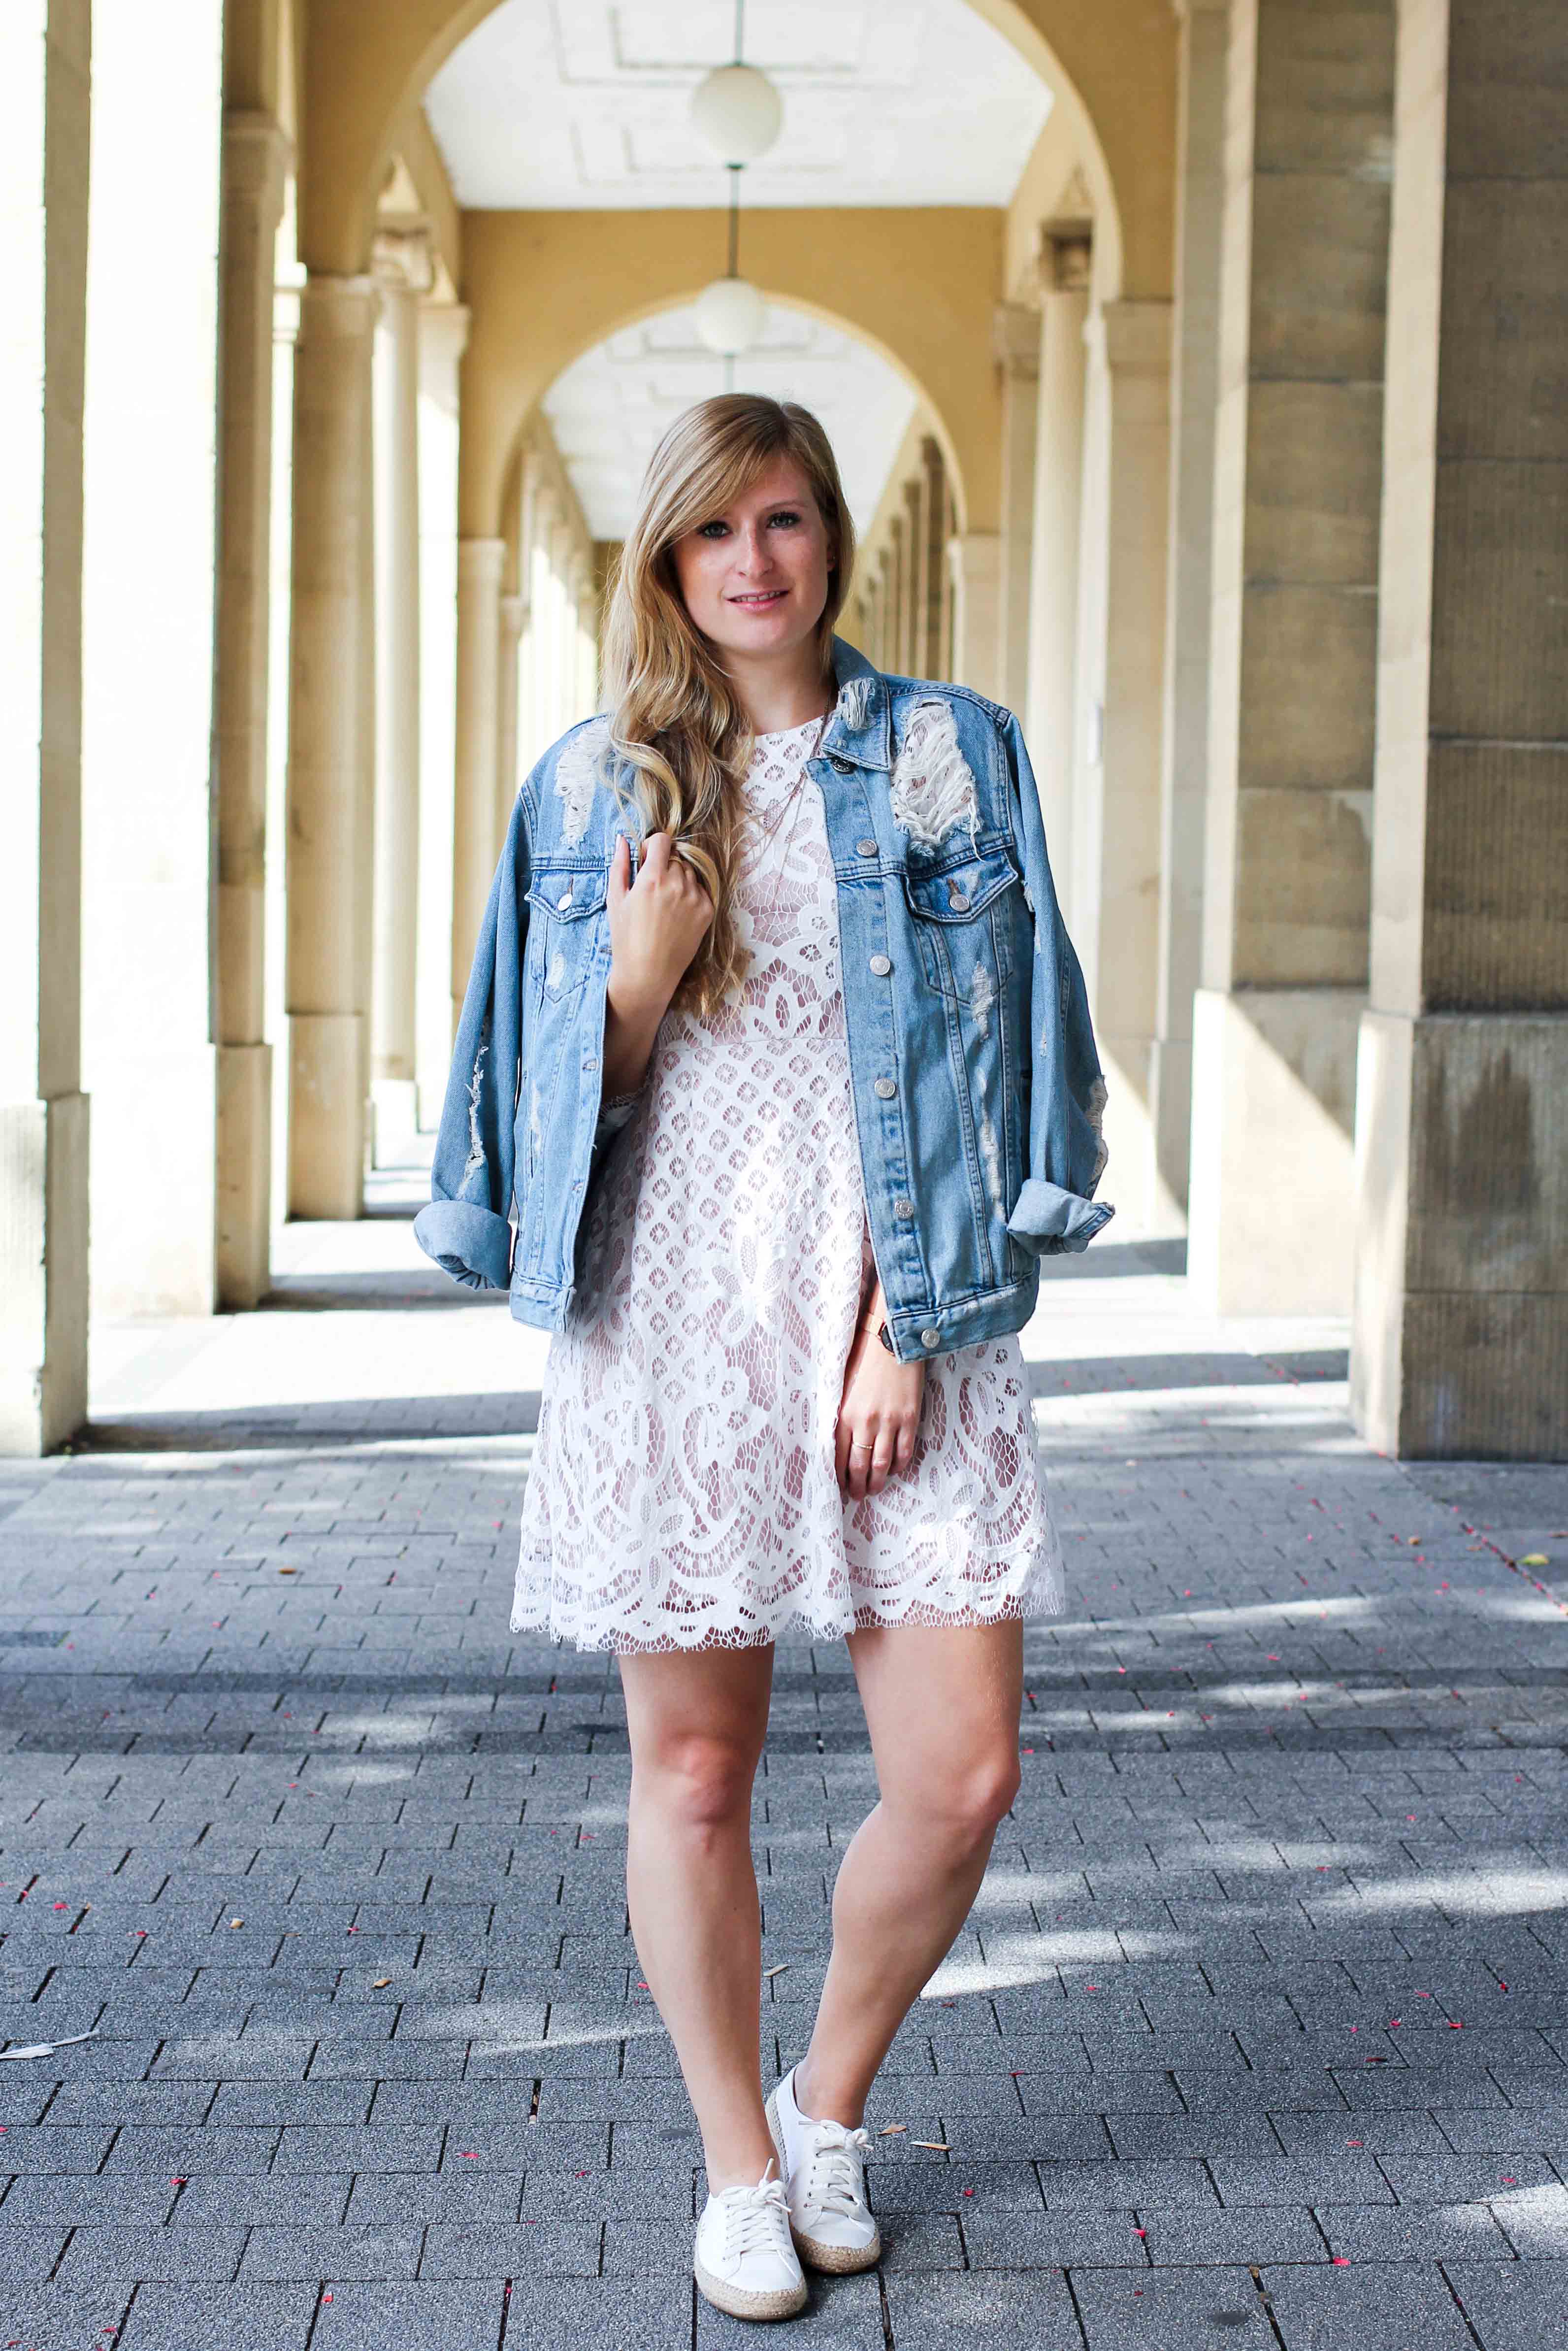 Weißes Spitzenkleid kombinieren Zerrissene Jeansjacke Ripped Sommerschuhe Streetstyle Karlsruhe Modeblog Outfit 1